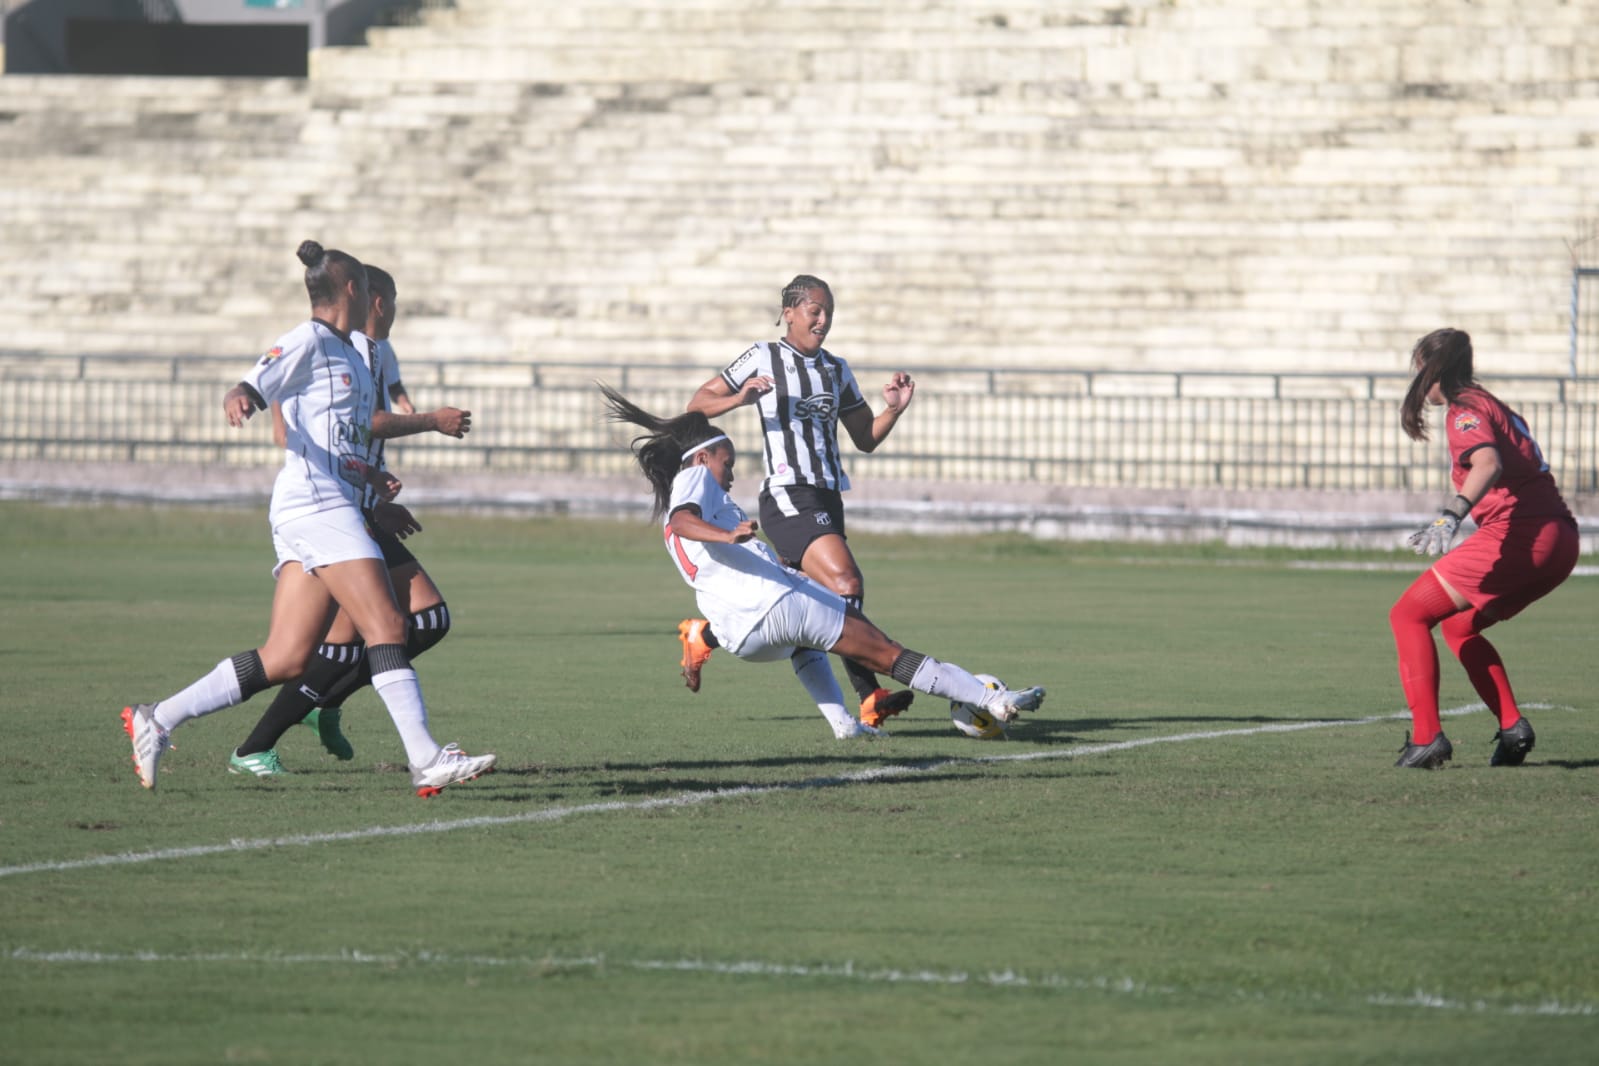 Botafogo-PB sofre em casa e perde por 5 a 0 para o Ceará no Brasileiro Feminino A2